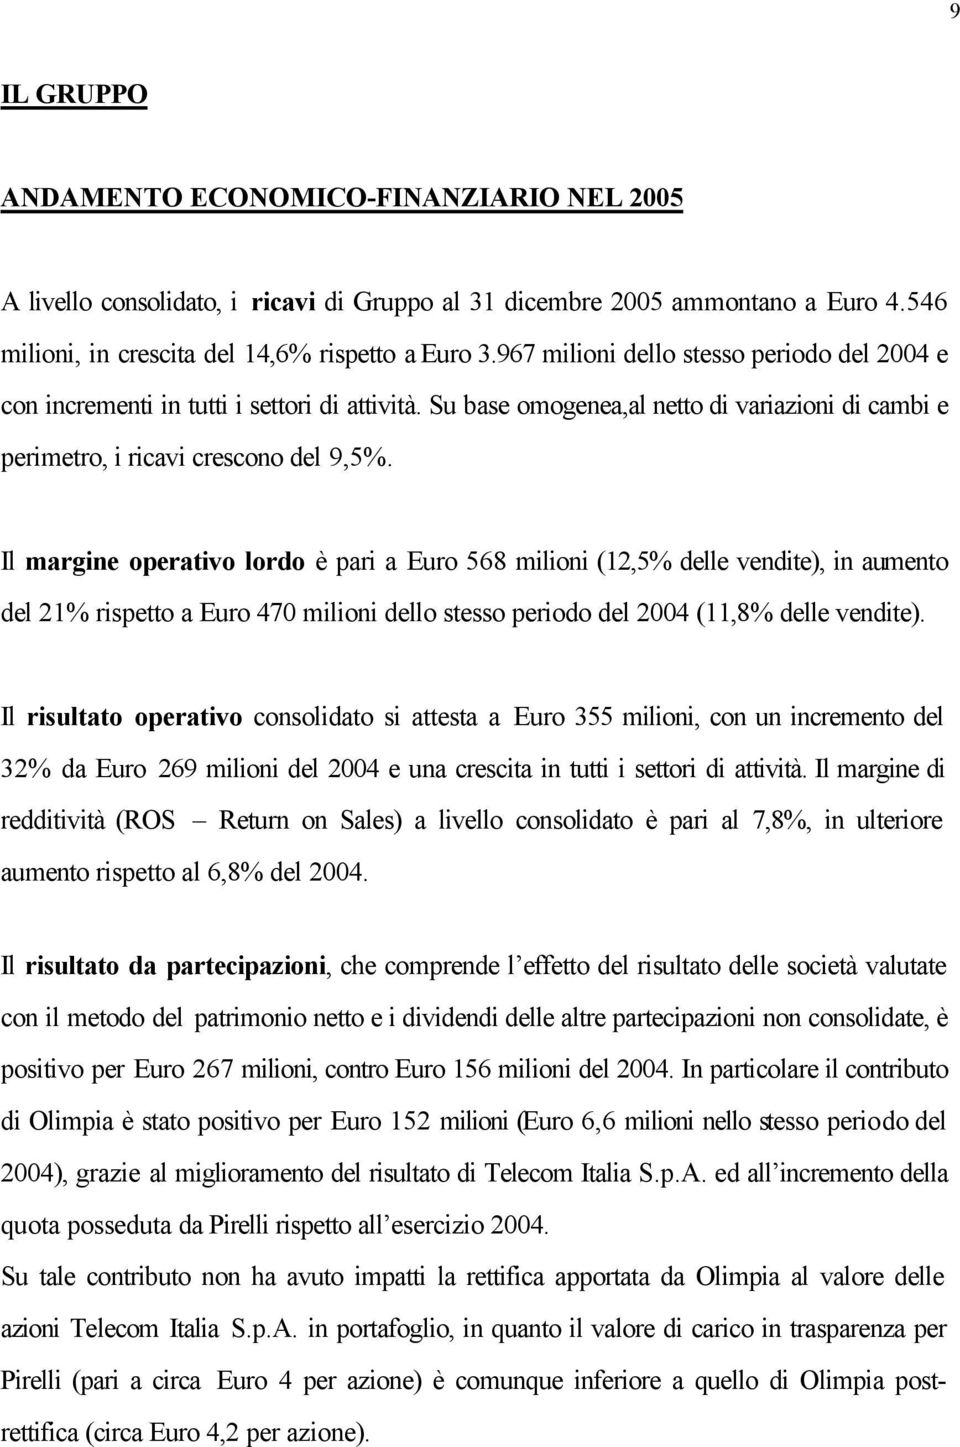 Il margine operativo lordo è pari a Euro 568 milioni (12,5% delle vendite), in aumento del 21% rispetto a Euro 470 milioni dello stesso periodo del 2004 (11,8% delle vendite).